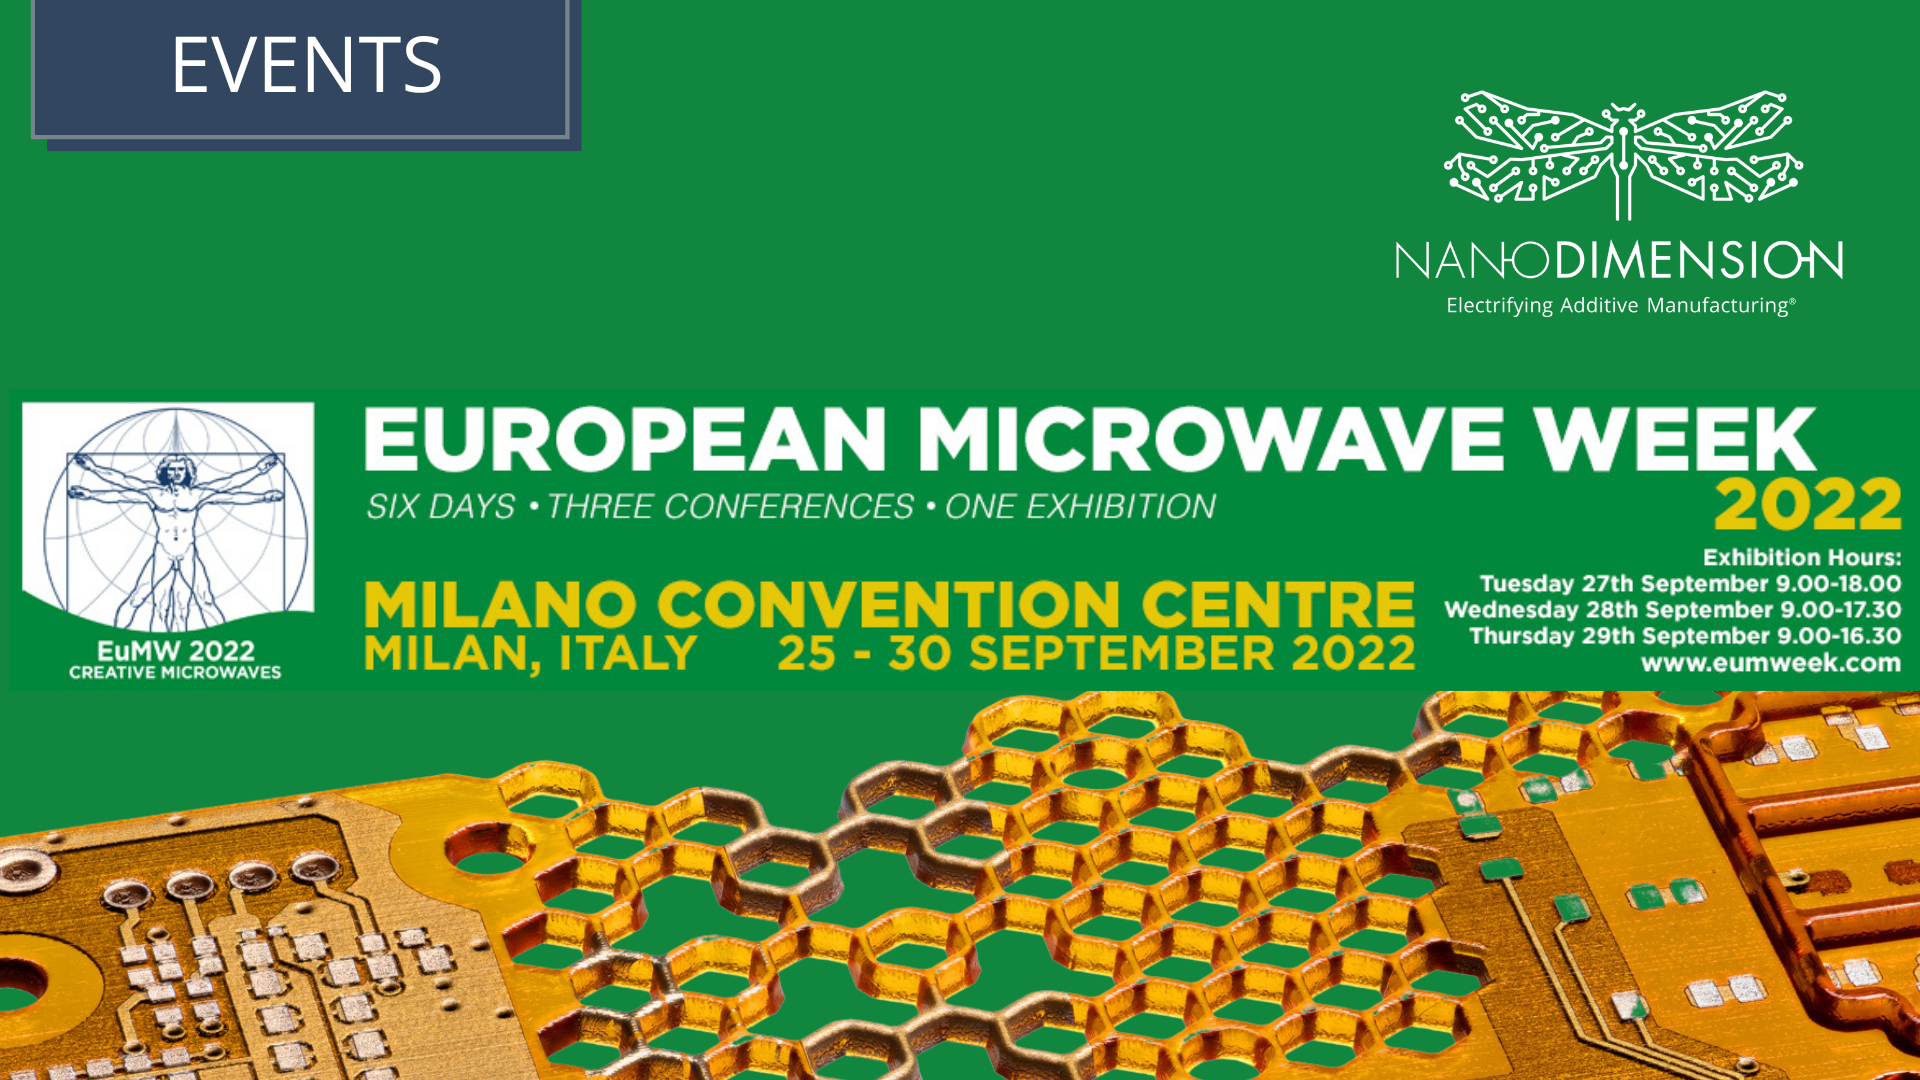 European Microwave Week 2022 Nano Dimension